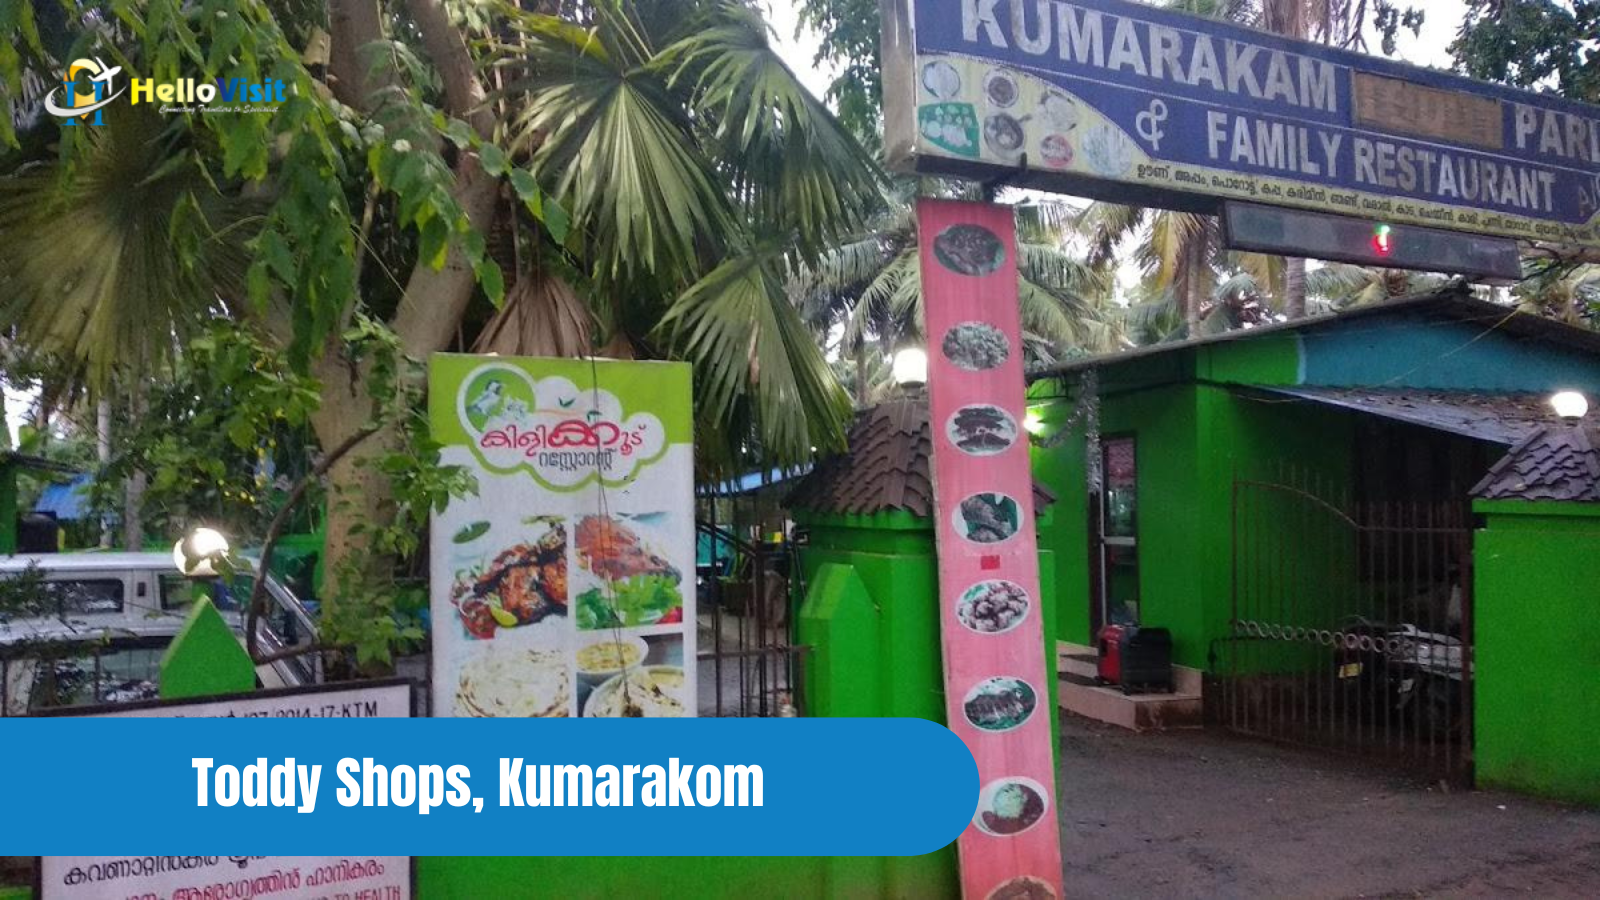  Toddy Shops, Kumarakom 